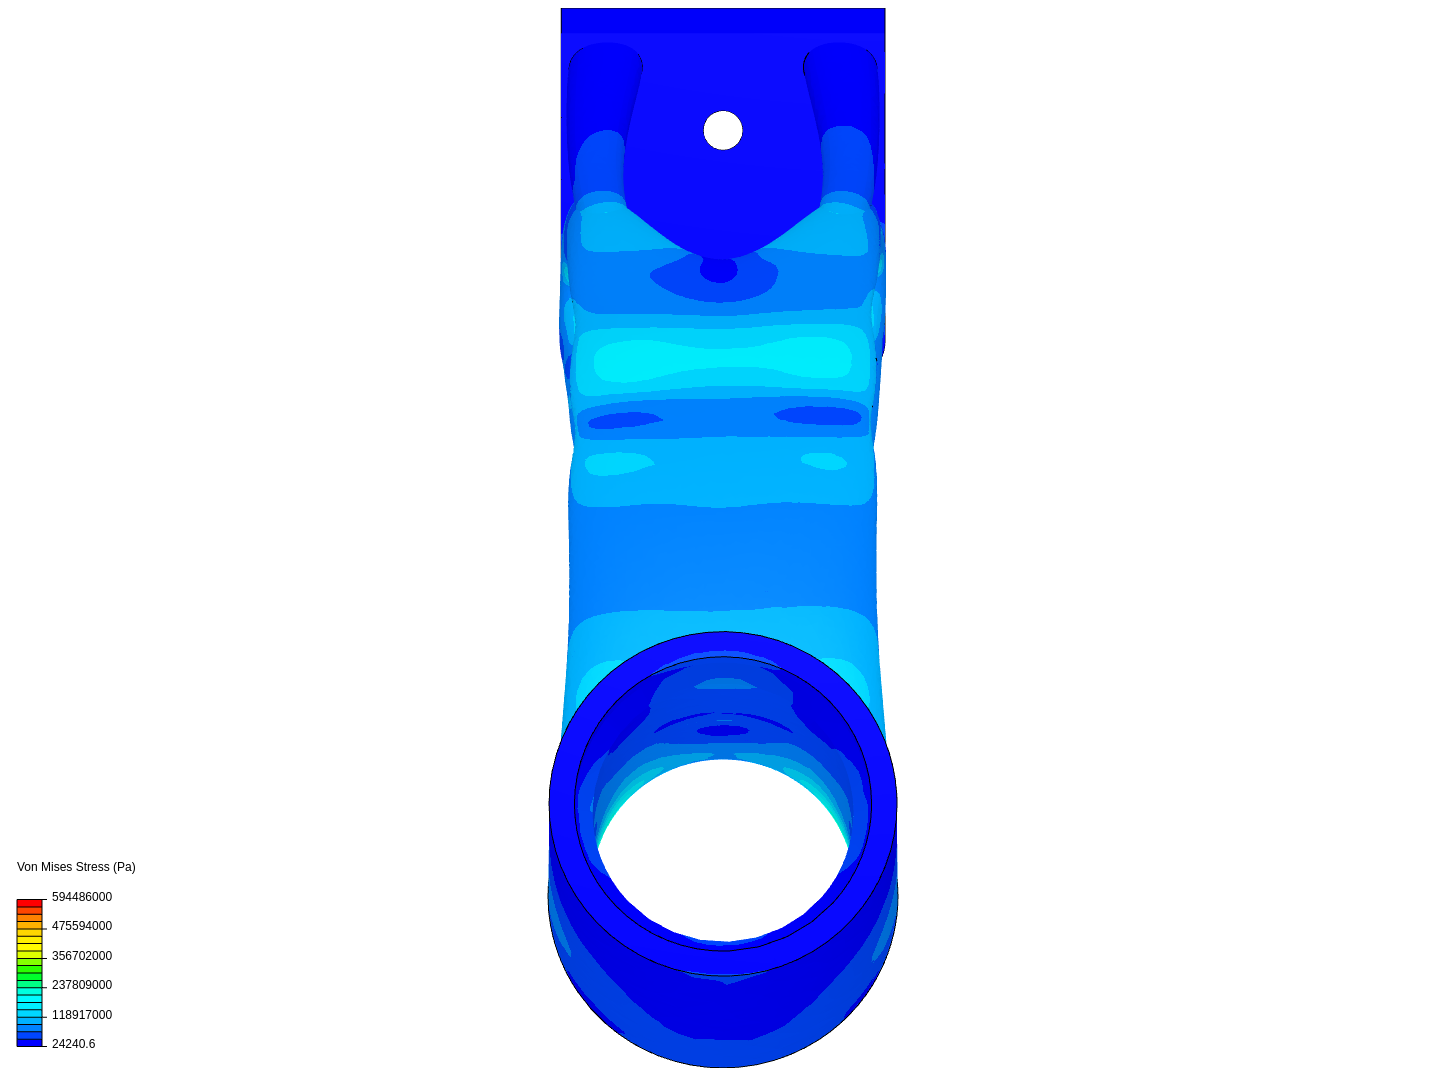 neck simulation image